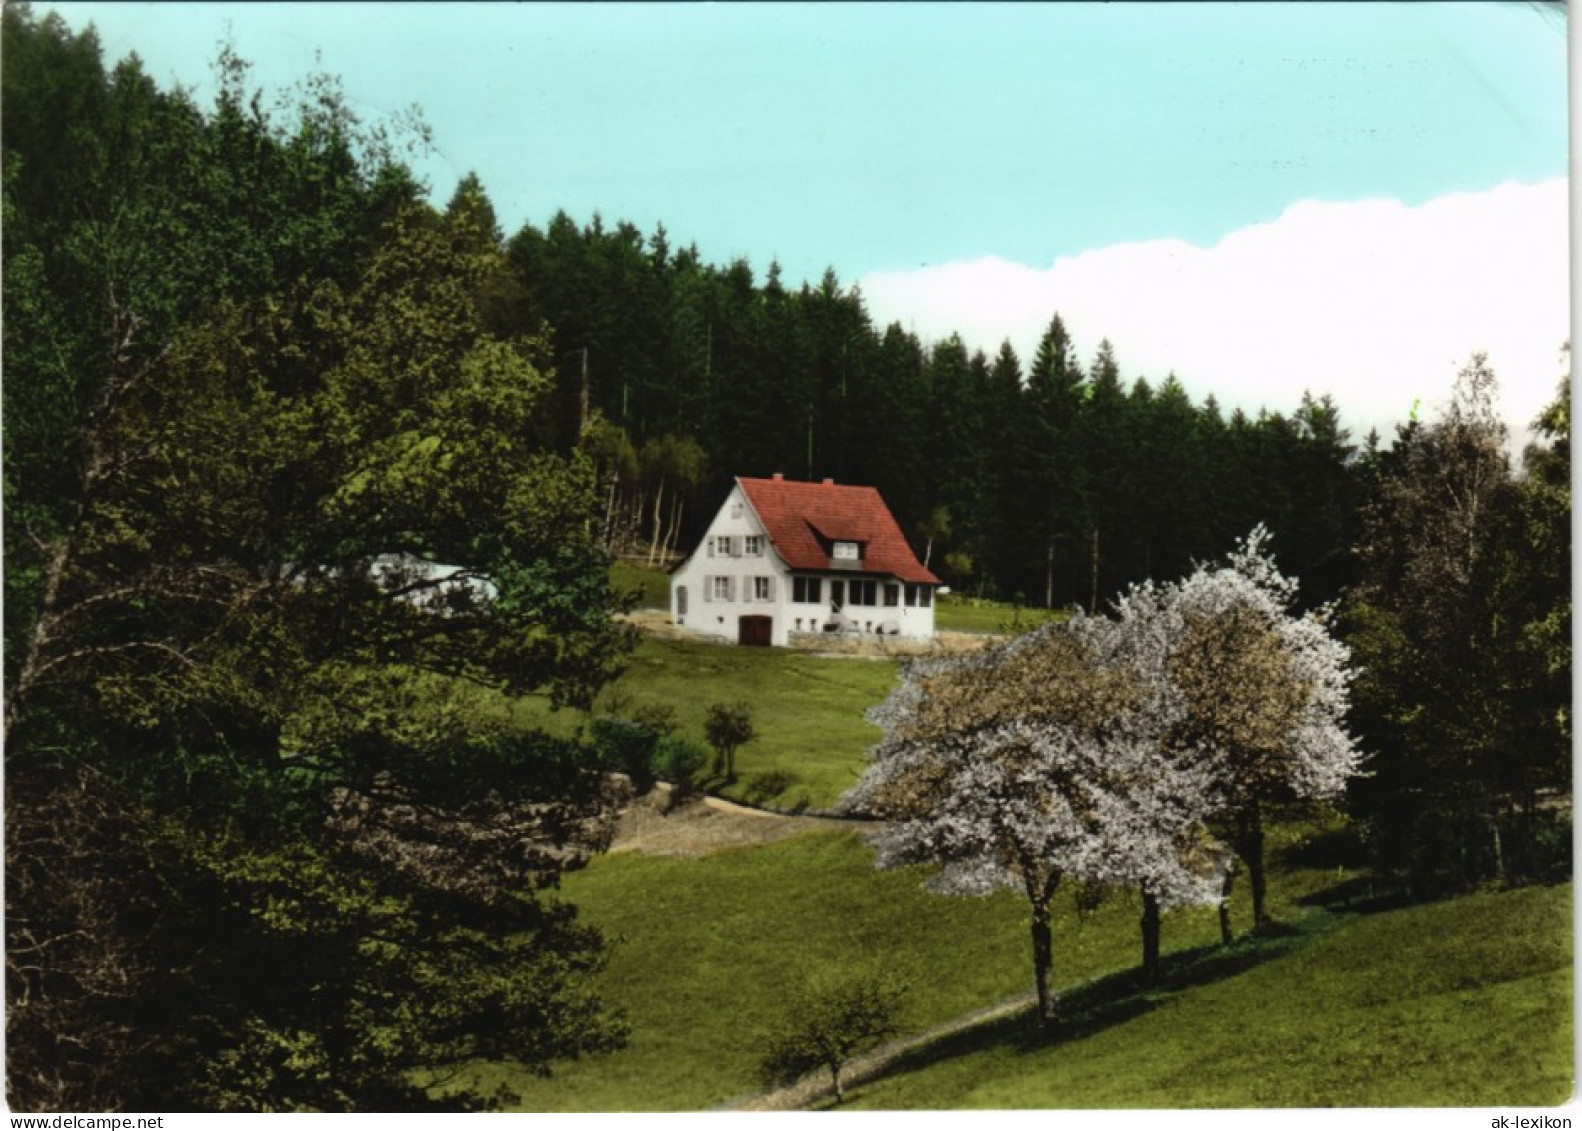 Nollenberg-Alpirsbach Höhengaststätte Und Pension WALDHEIM 1972 - Alpirsbach